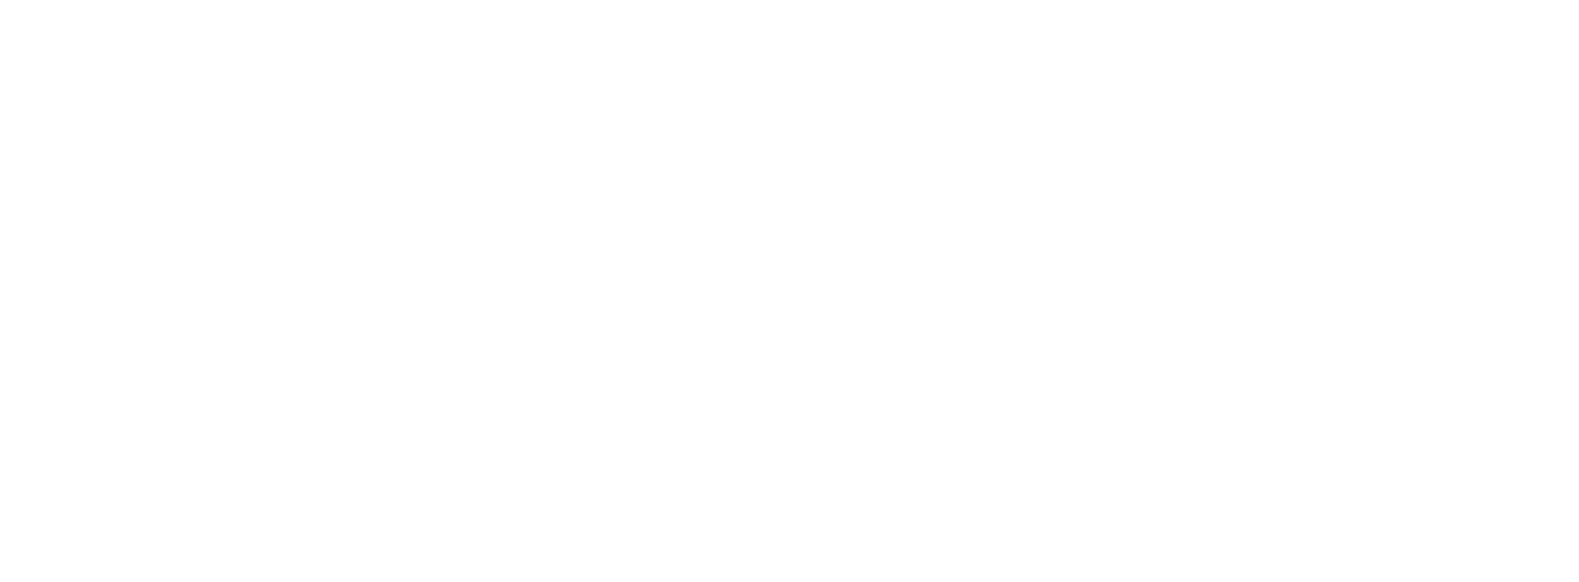 VanEck logo for dark backgrounds (transparent PNG)